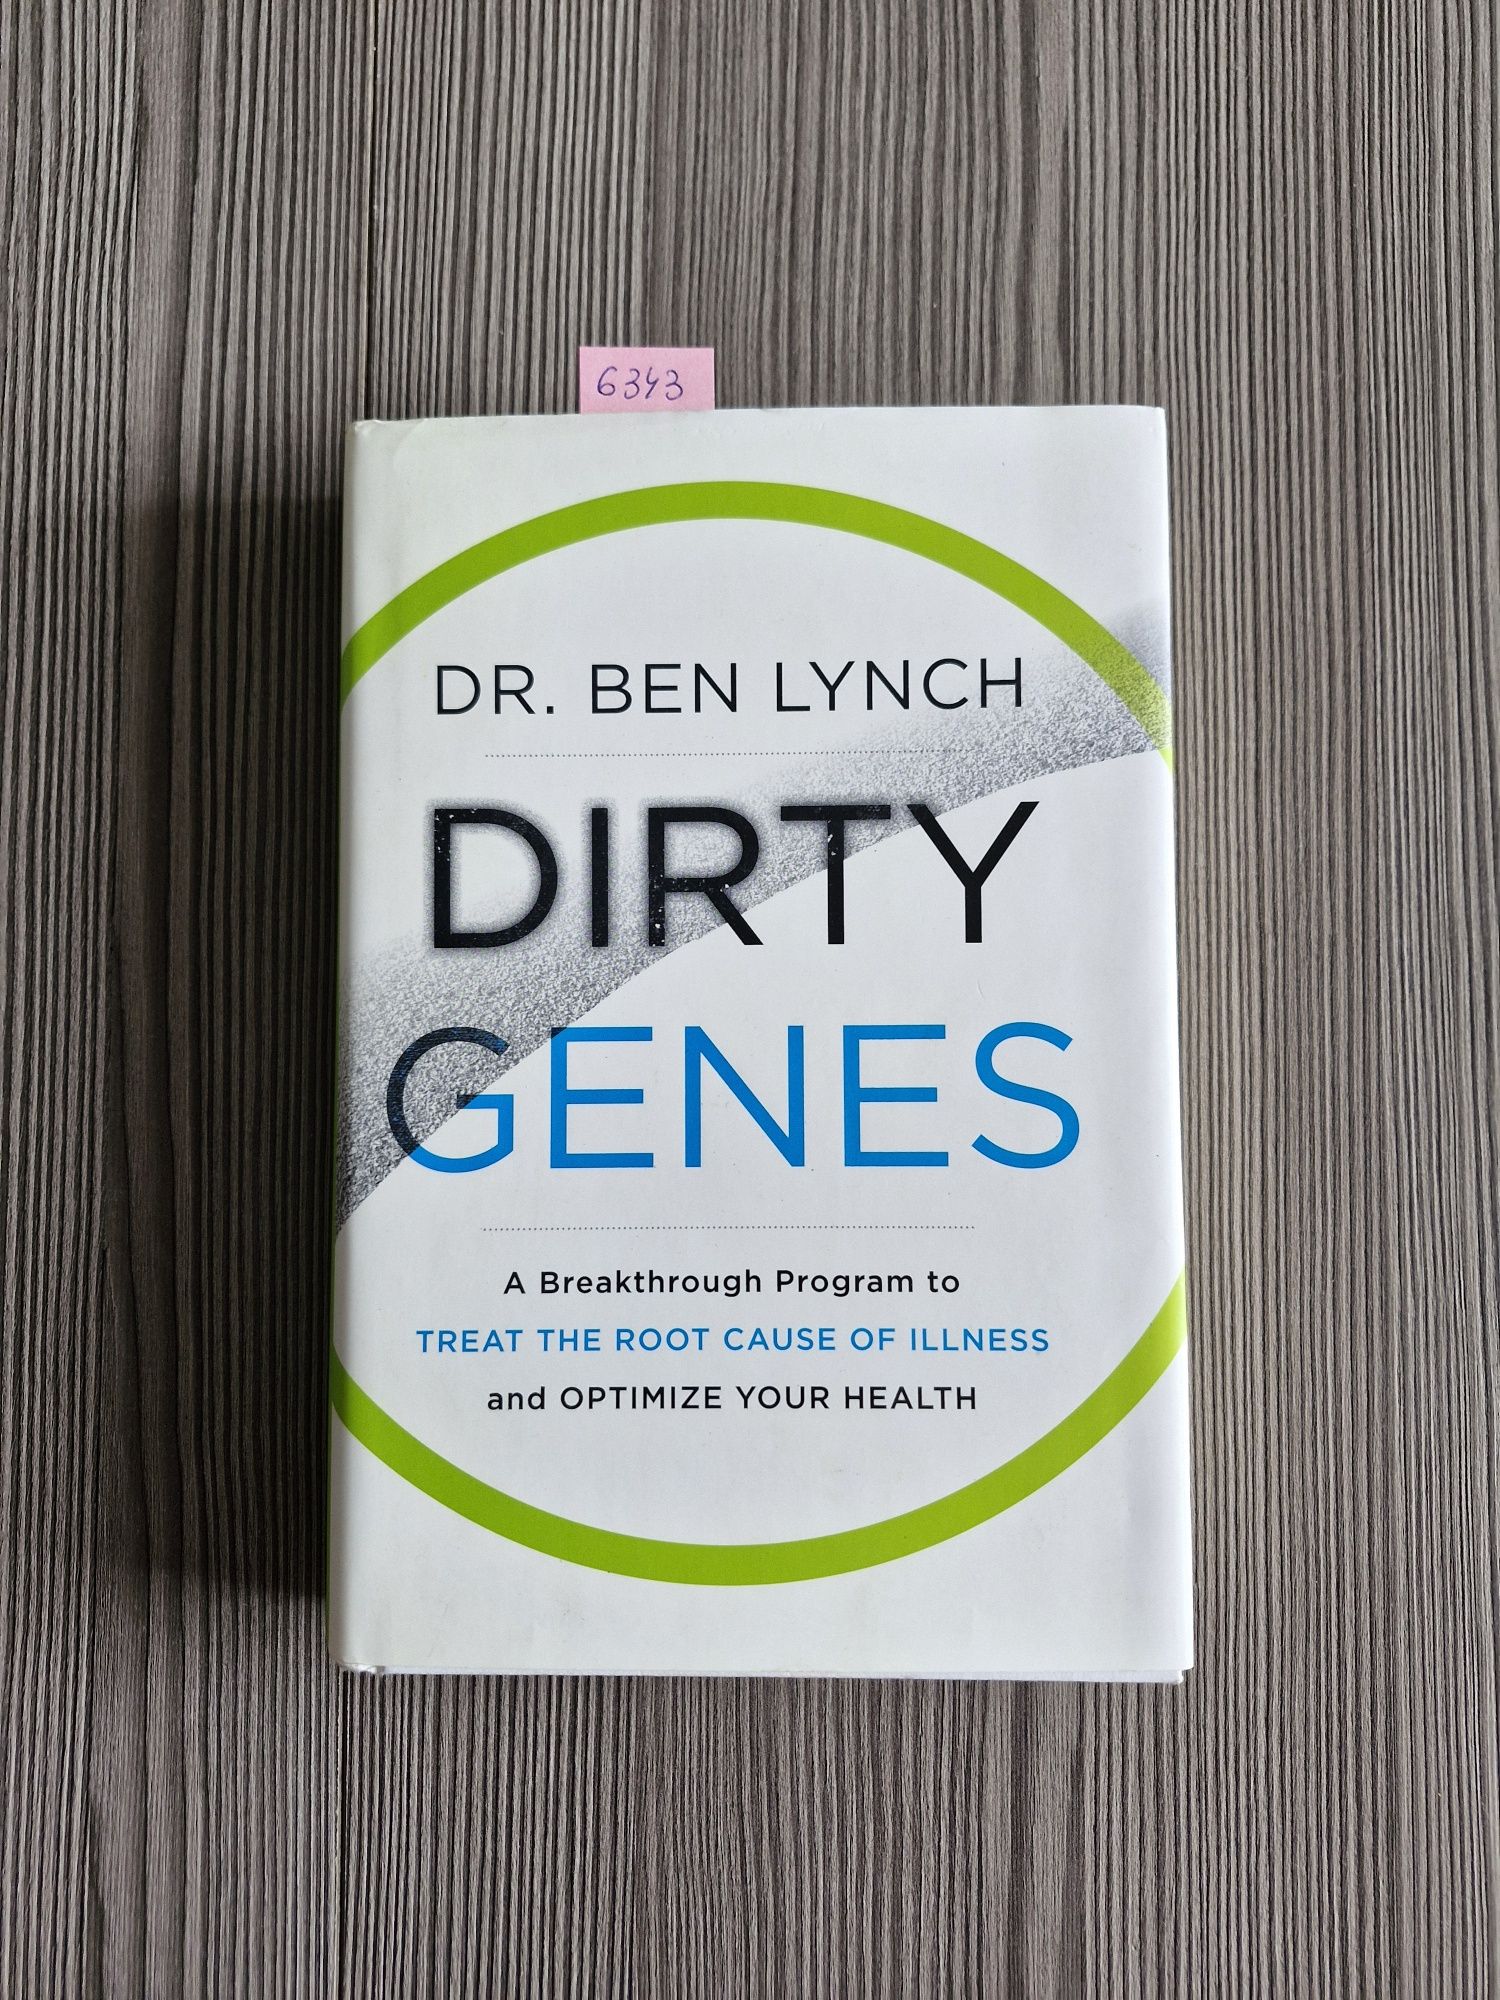 6343. "Brudne geny" Dr.Ben Lynch (j.angielski)